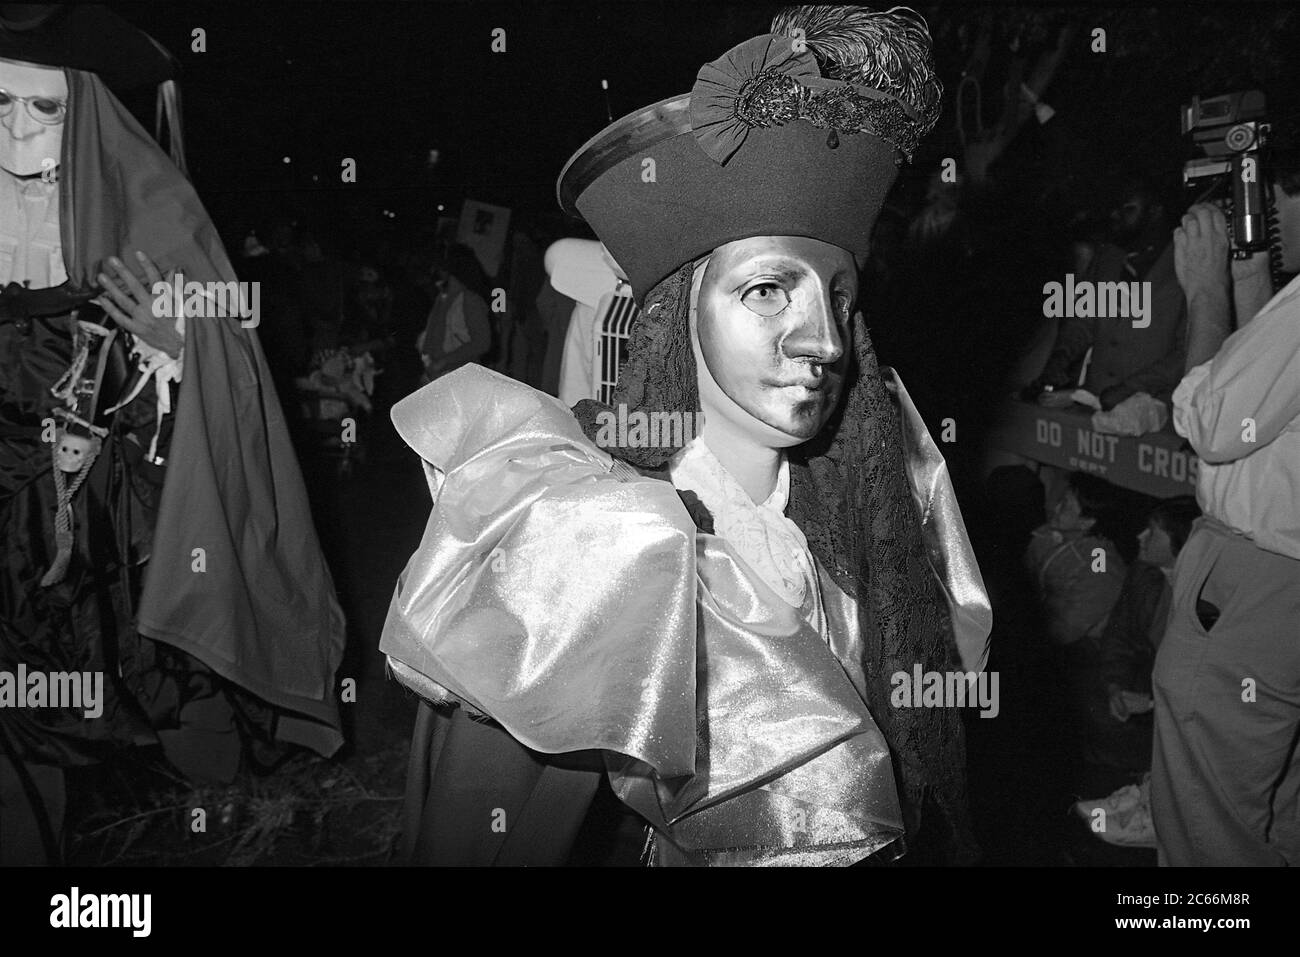 Partecipante alla Greenwich Village Halloween Parade, New York City, USA negli anni '80 fotografato con film in bianco e nero di notte. Foto Stock